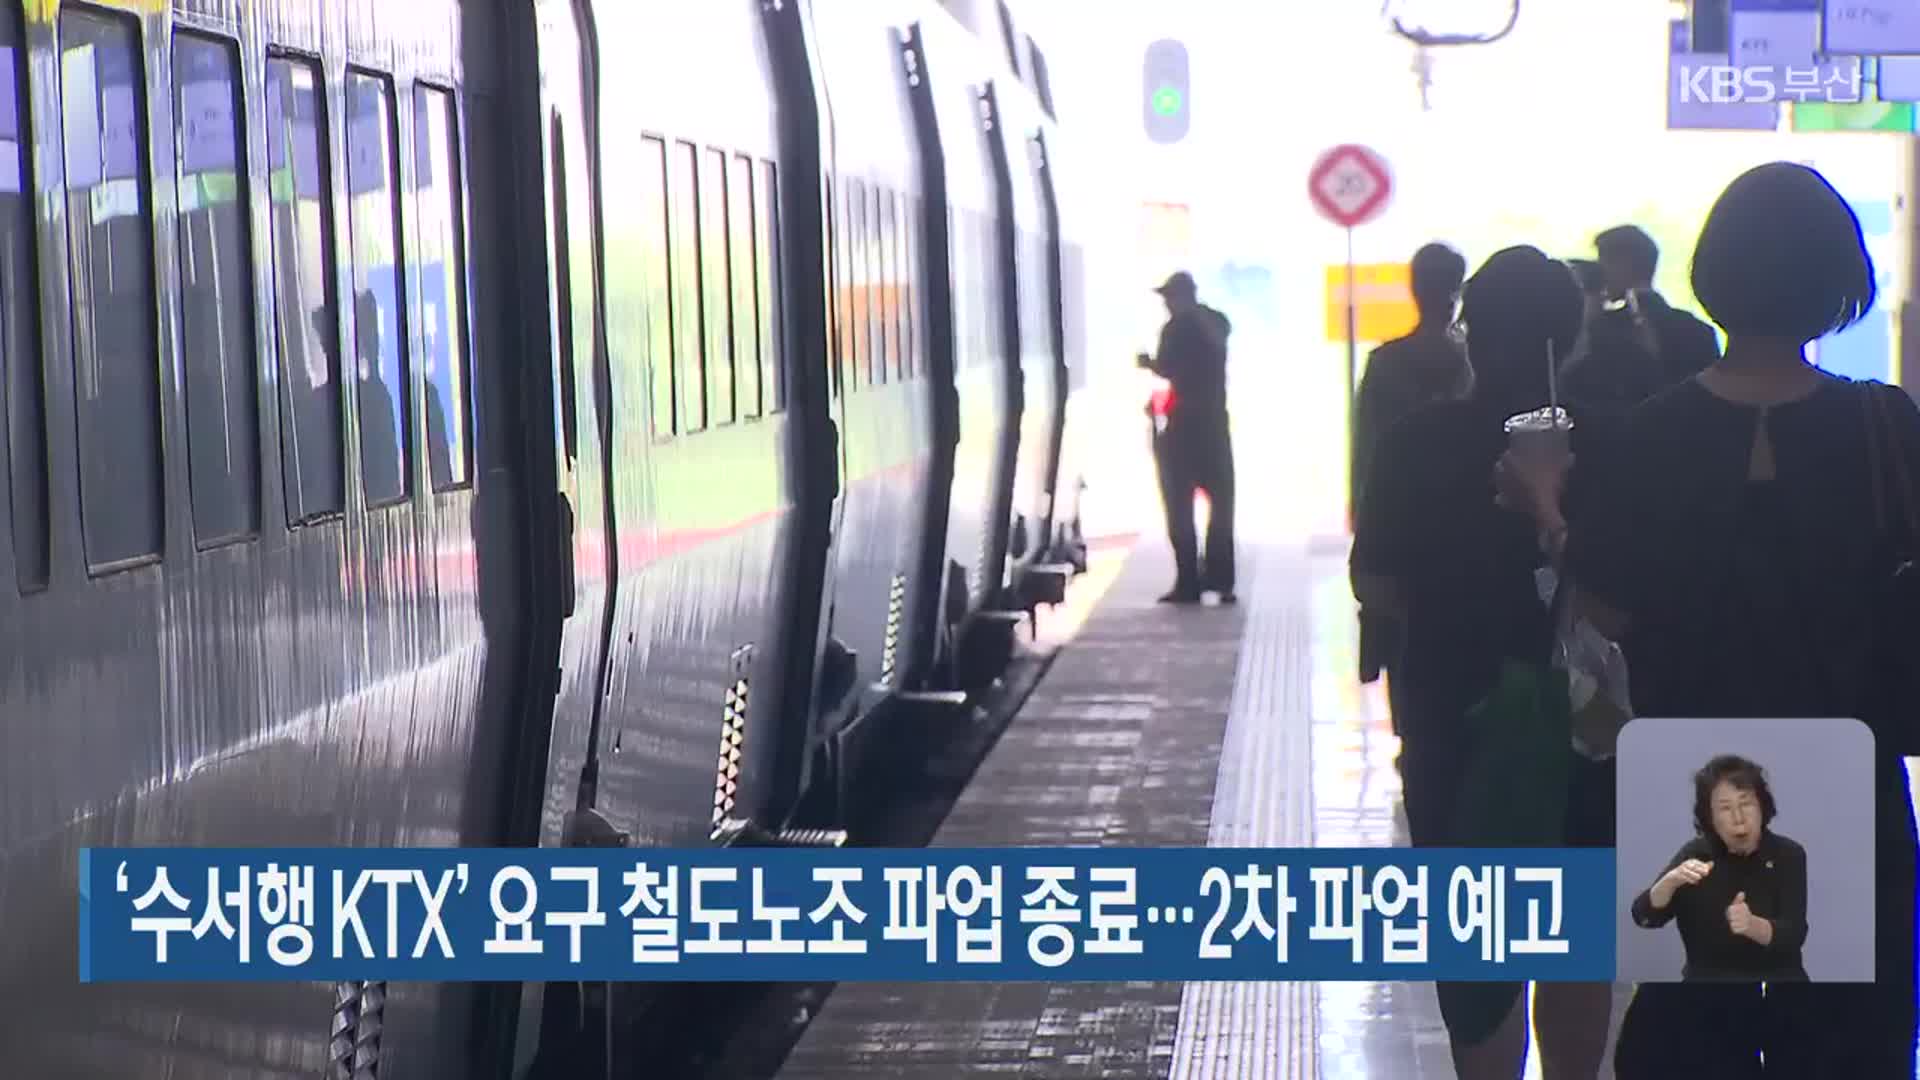 ‘수서행 KTX’ 요구 철도노조 파업 종료…2차 파업 예고